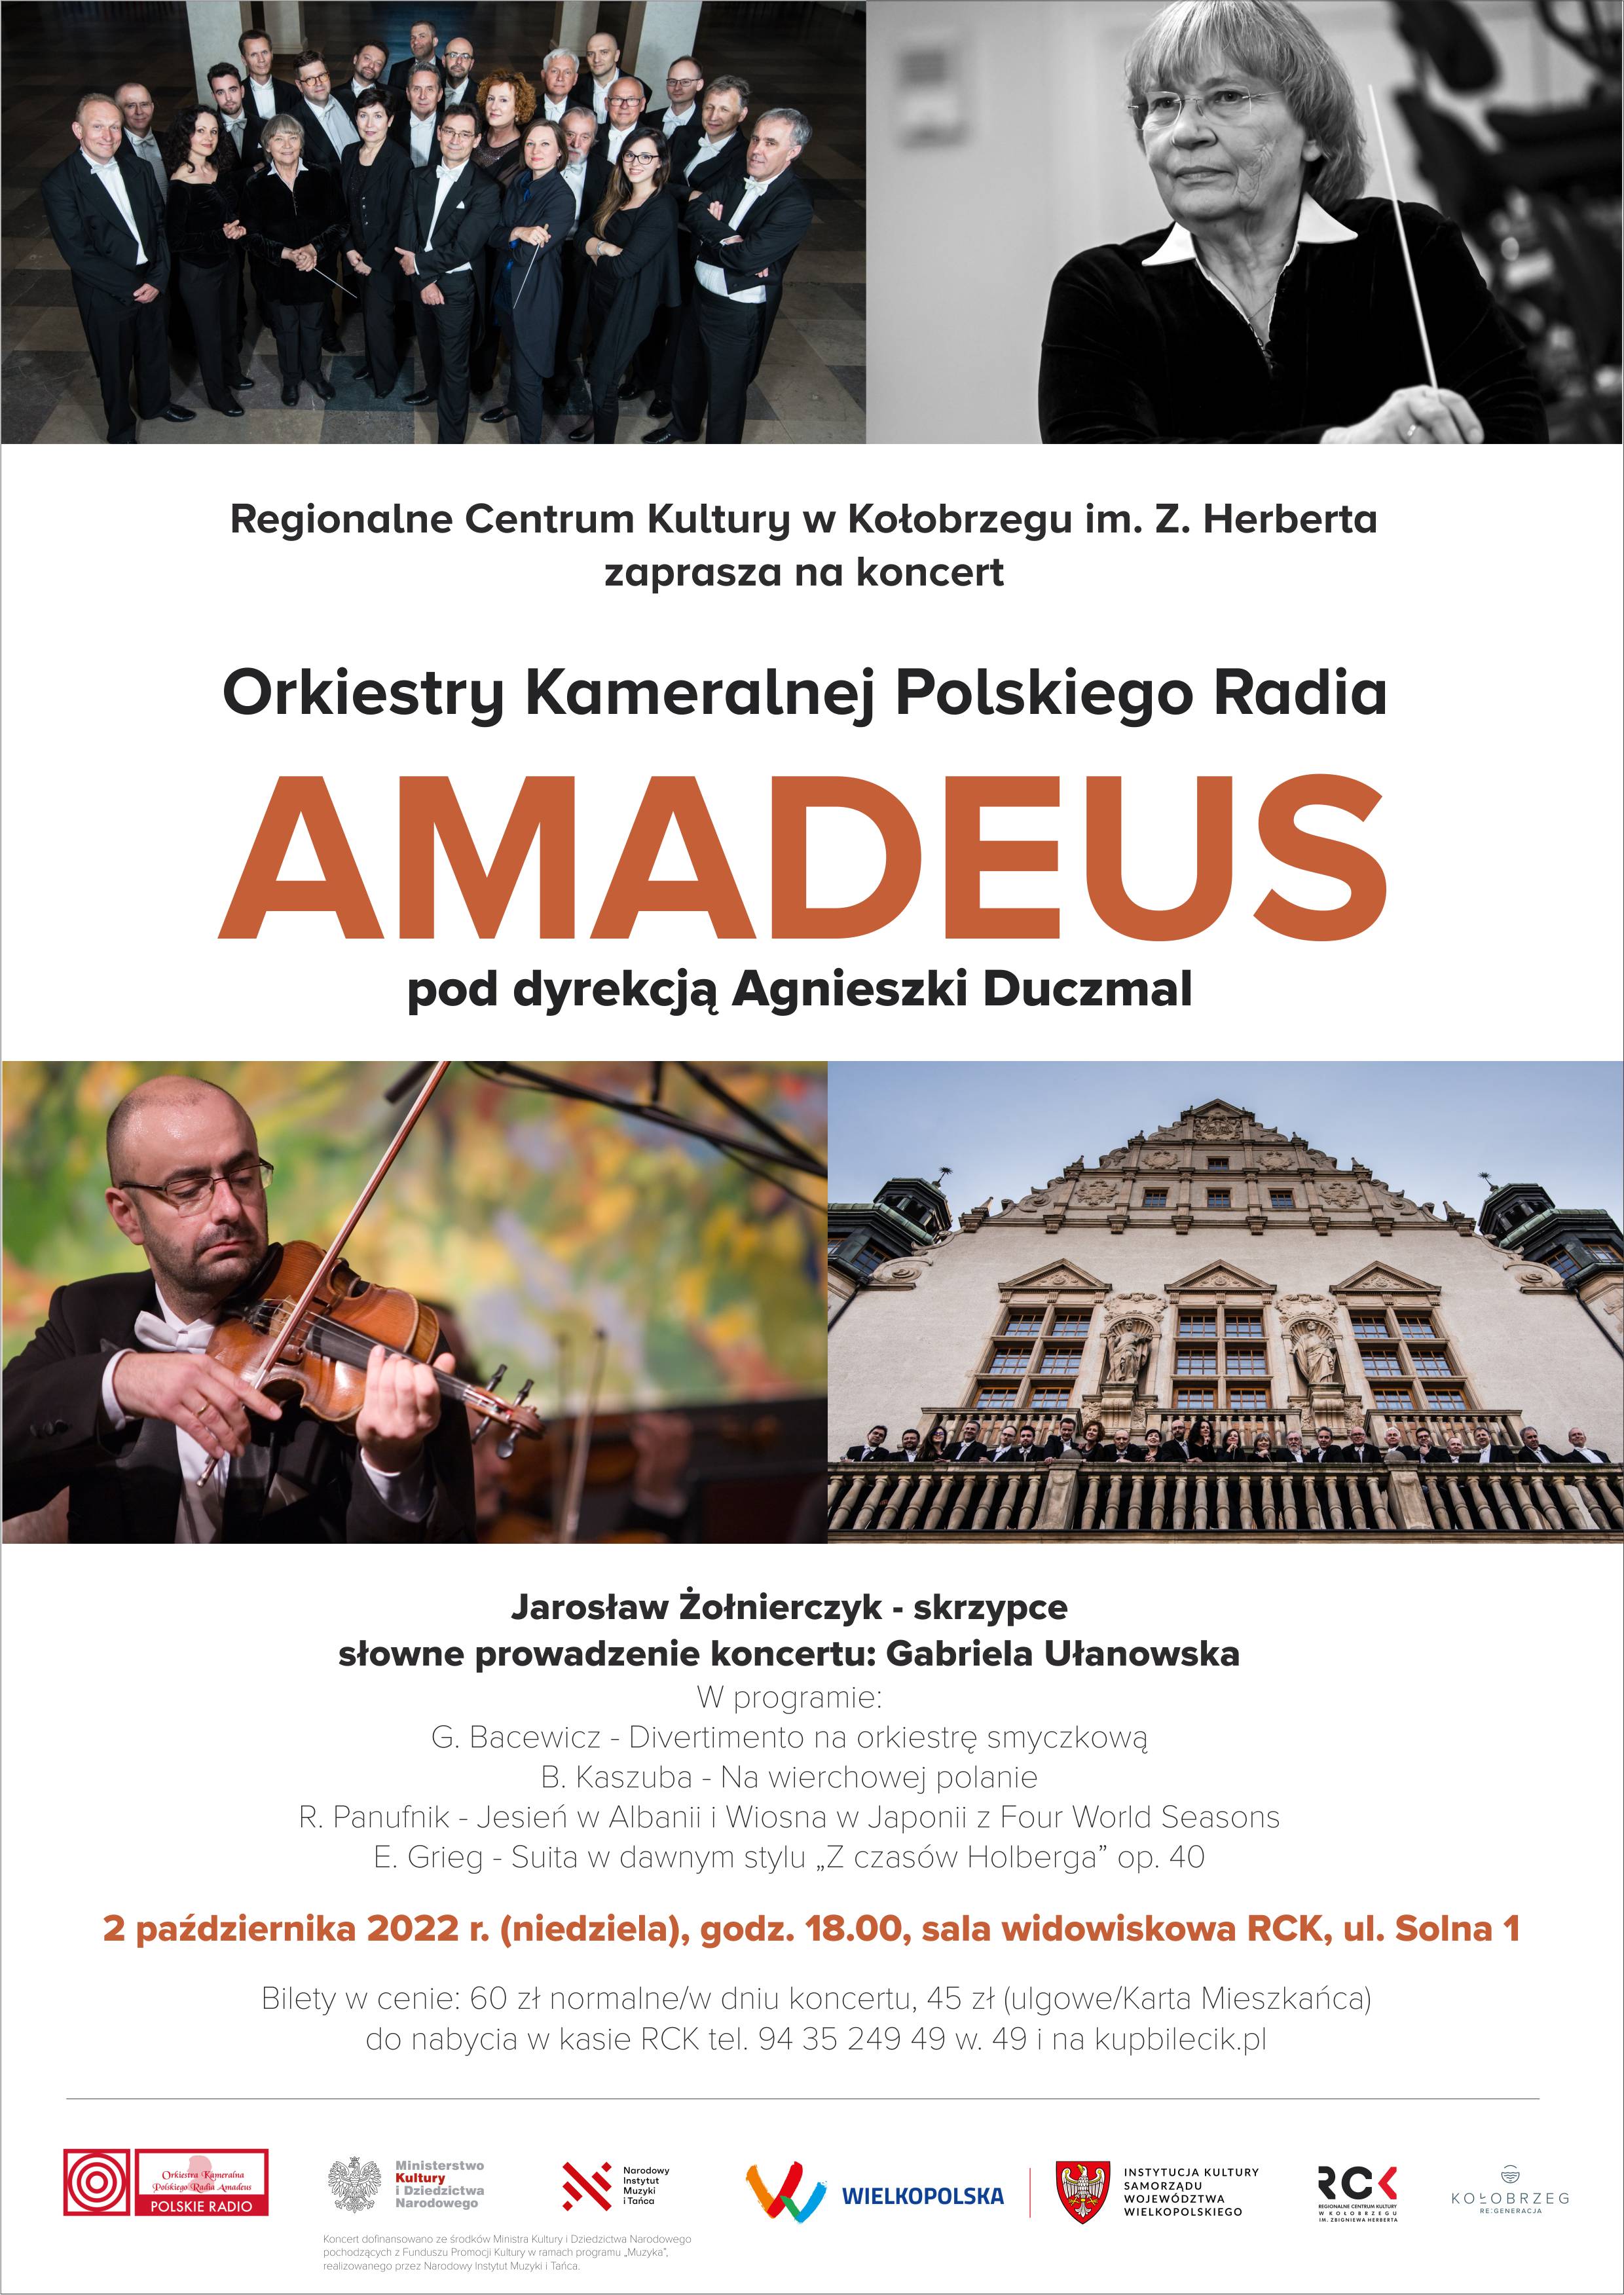 Orkiestra Kameralna Polskiego Radia  Amadeus